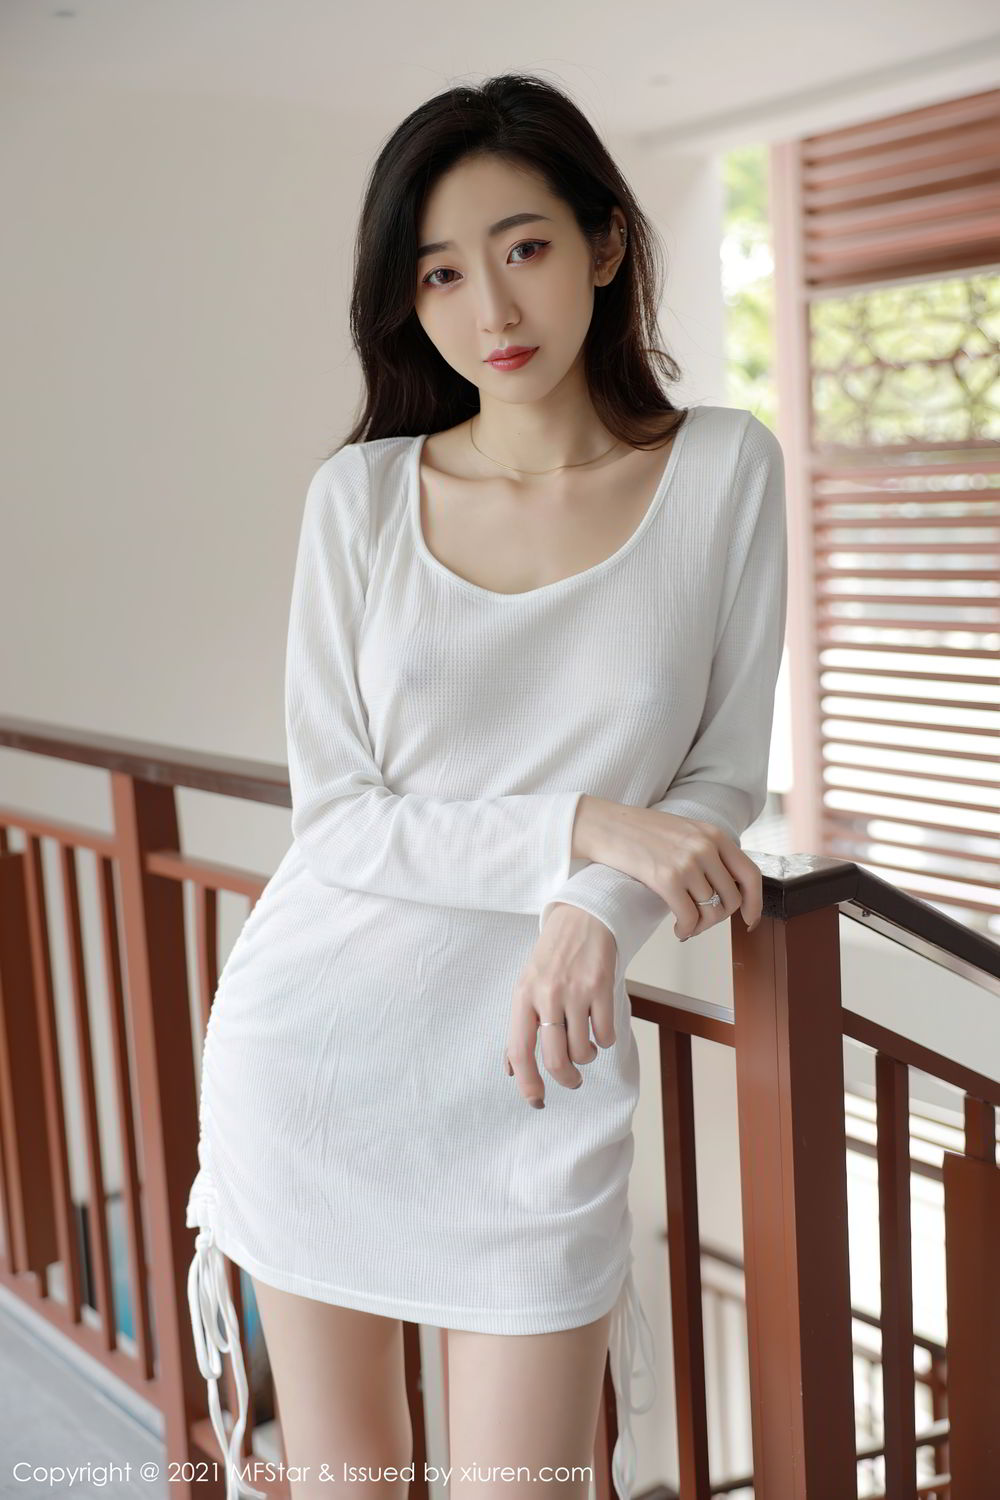 性感锁骨美女安琪Yee真空装白色棉裙凸点穿着尽显前凸后翘身材写真图集图片